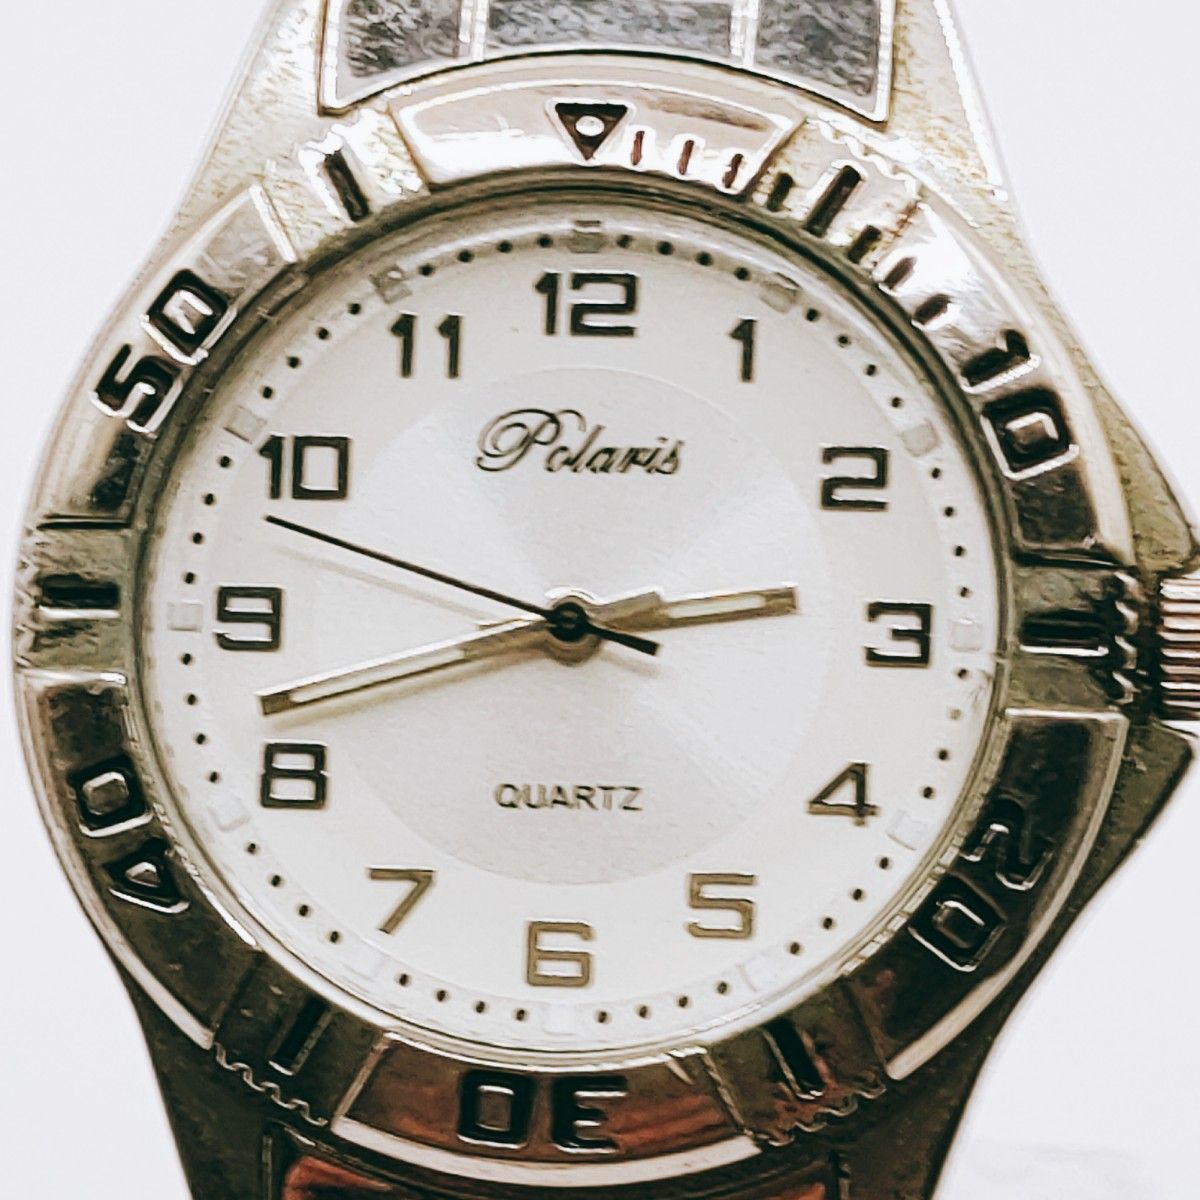 #8 Polaris ポラリス 腕時計 クウォーツ 3針 白文字盤 シルバー基調  アクセサリー ヴィンテージ アンティーク